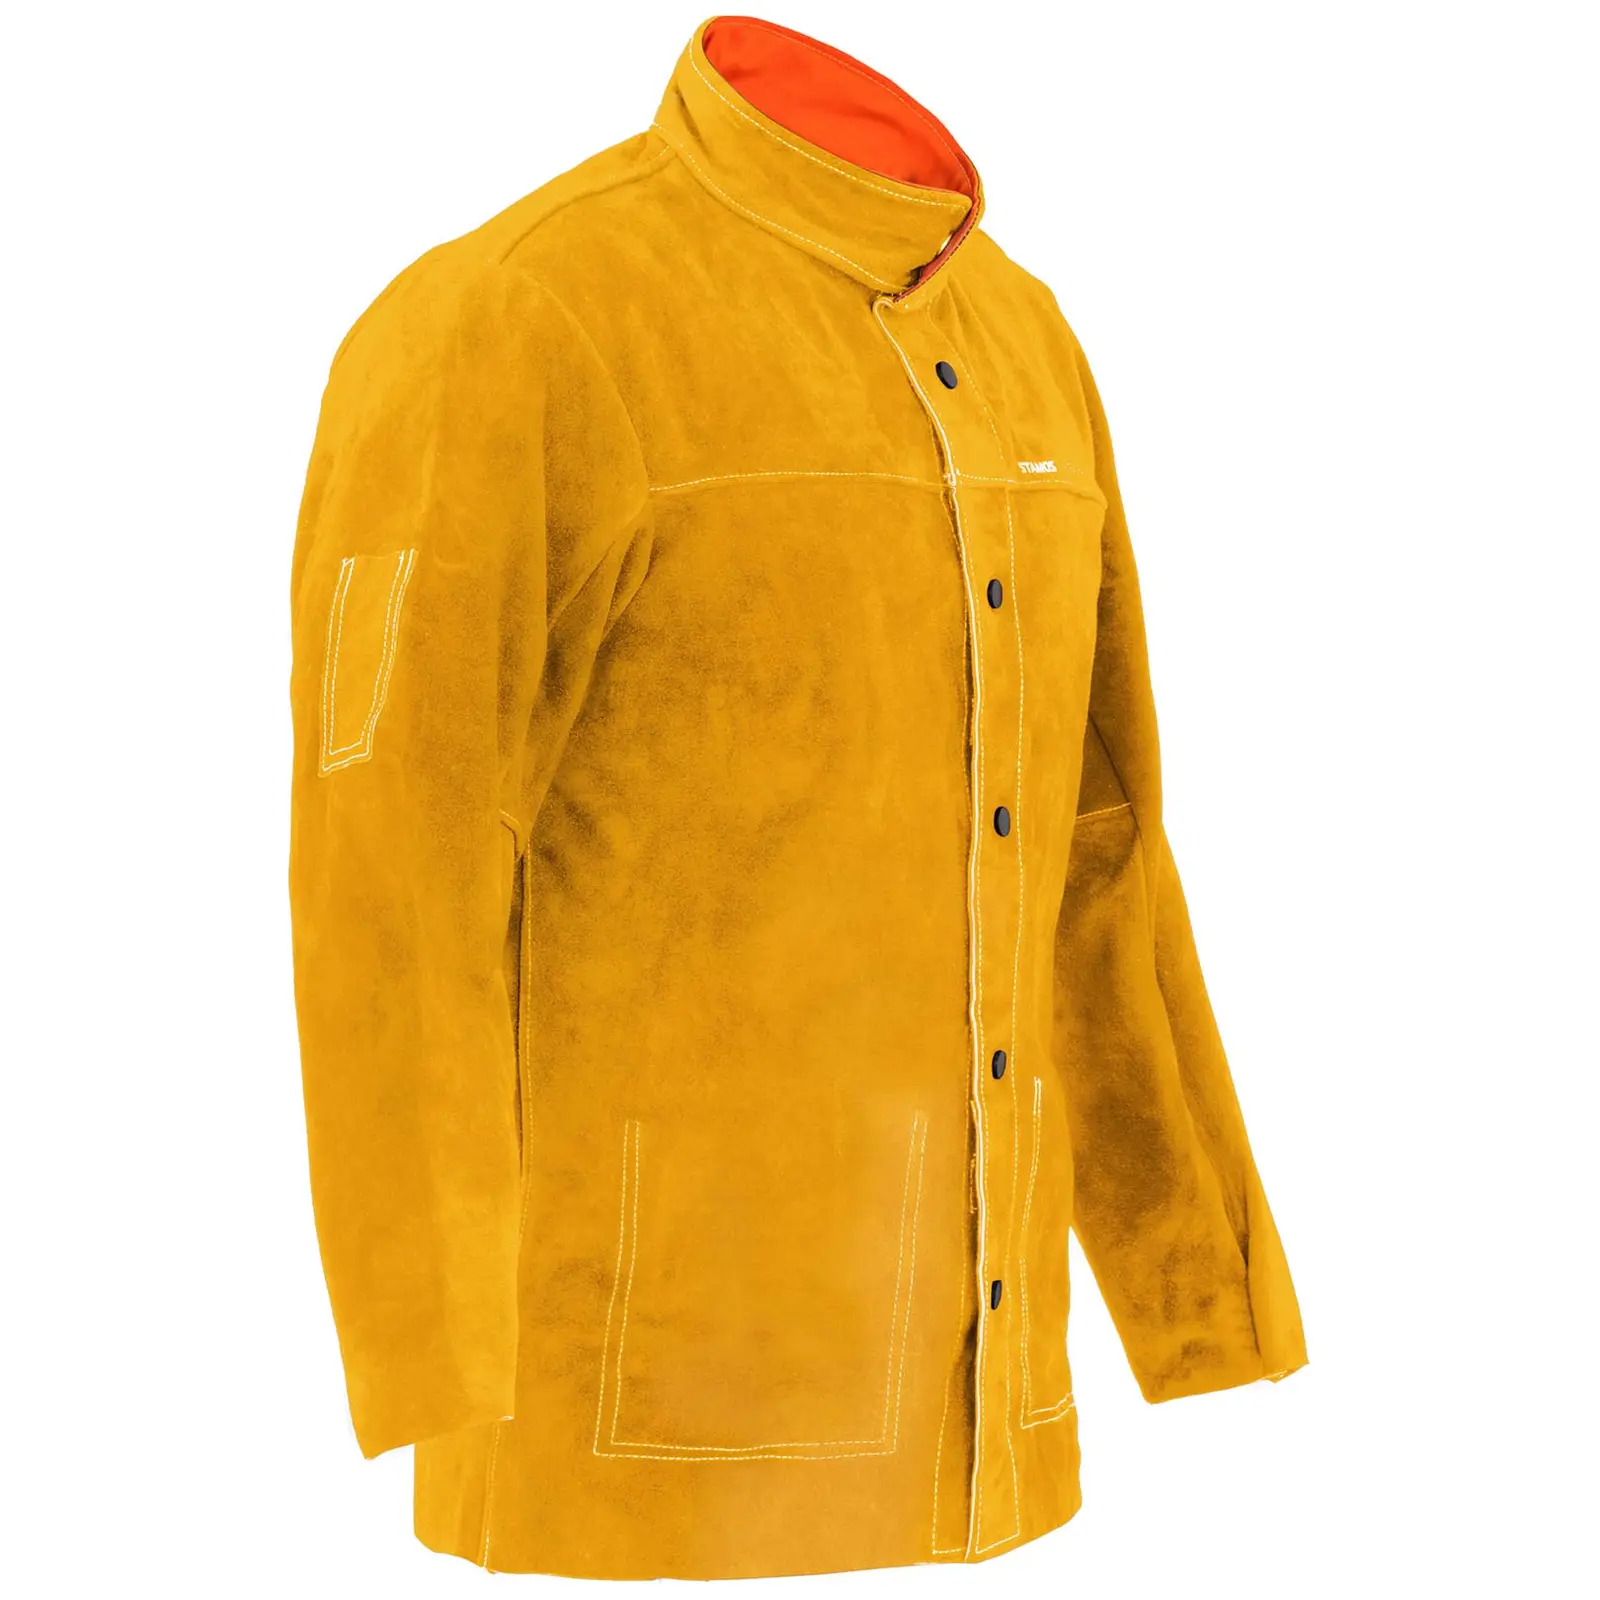 Marhabőr hegesztő kabát - arany - M-es méret